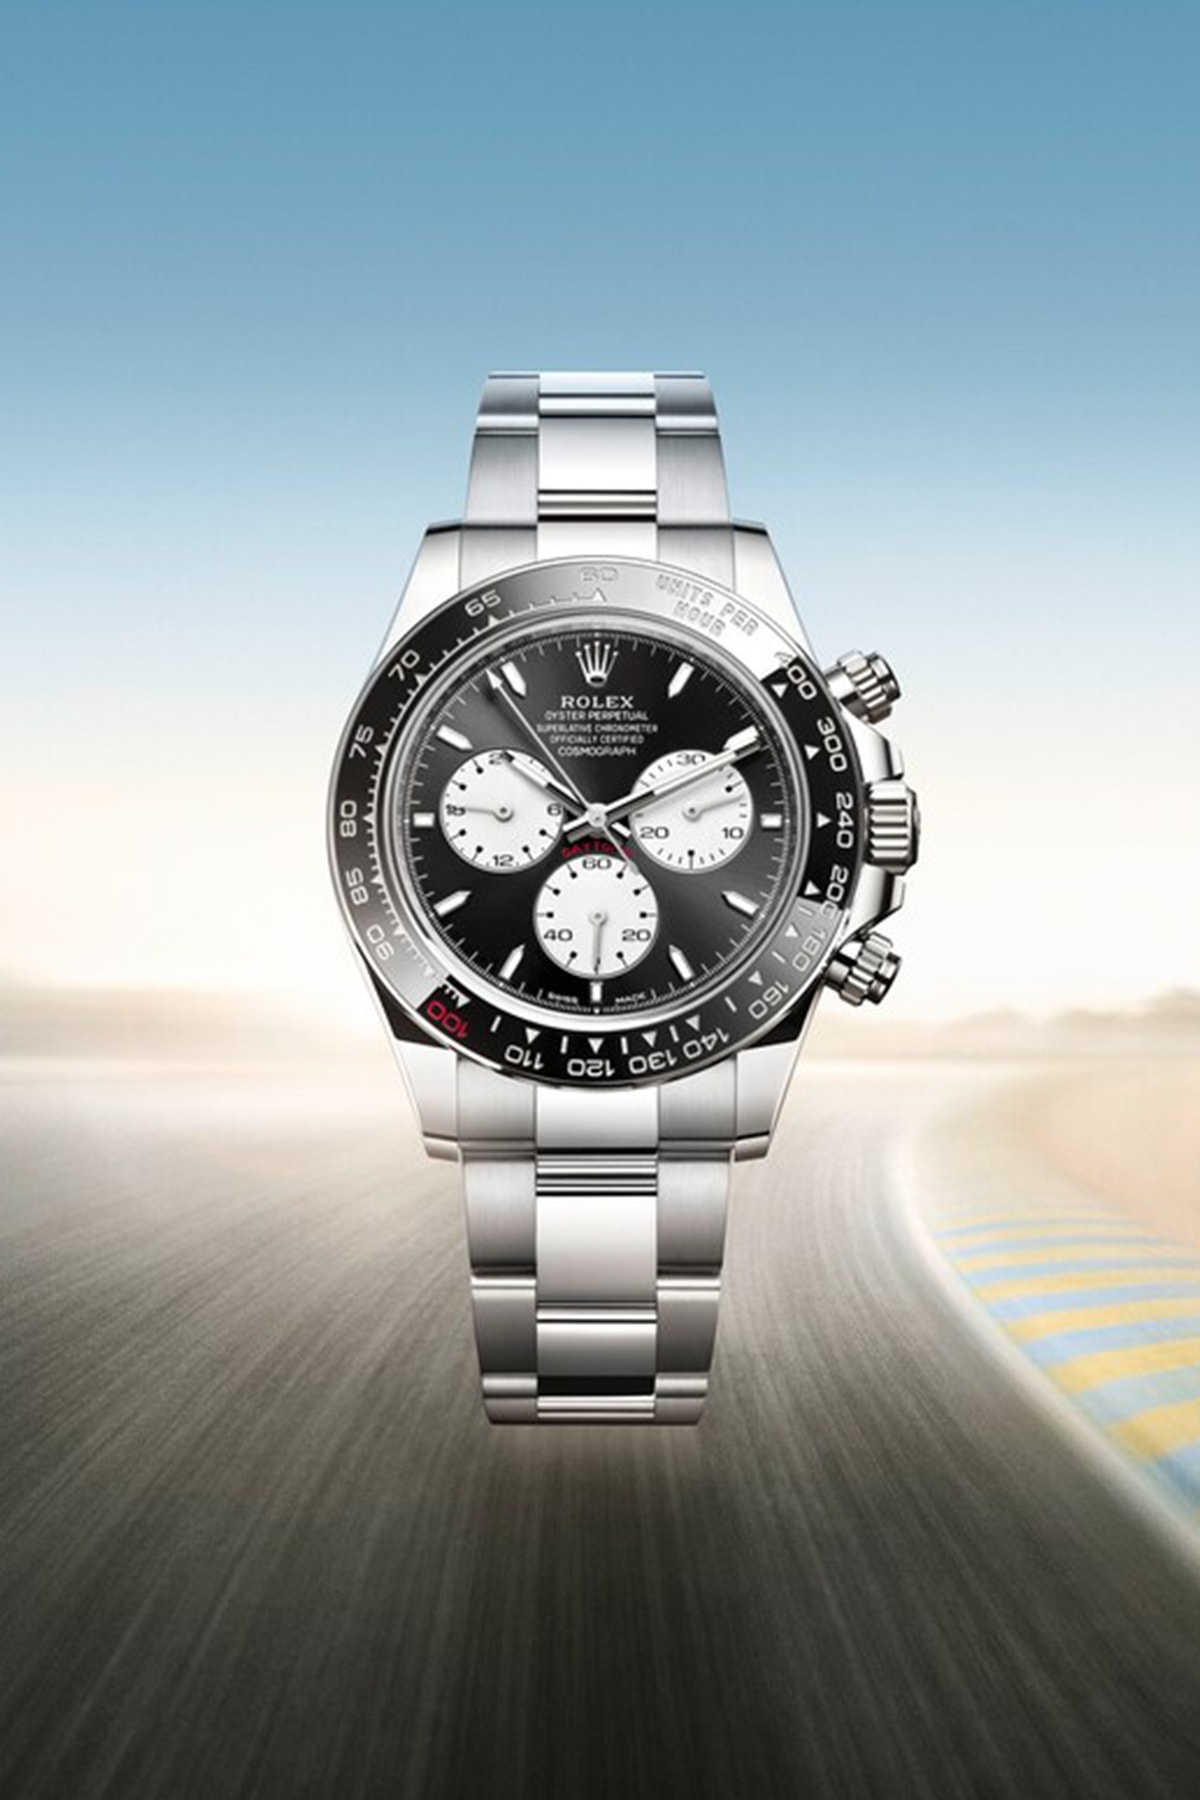 ロレックスがル・マン24時間レースの100周年を記念した新作デイトナを発表 Rolex Reveals A special Cosmograph Daytona homage to the 24 Hours of Le Mans centenary